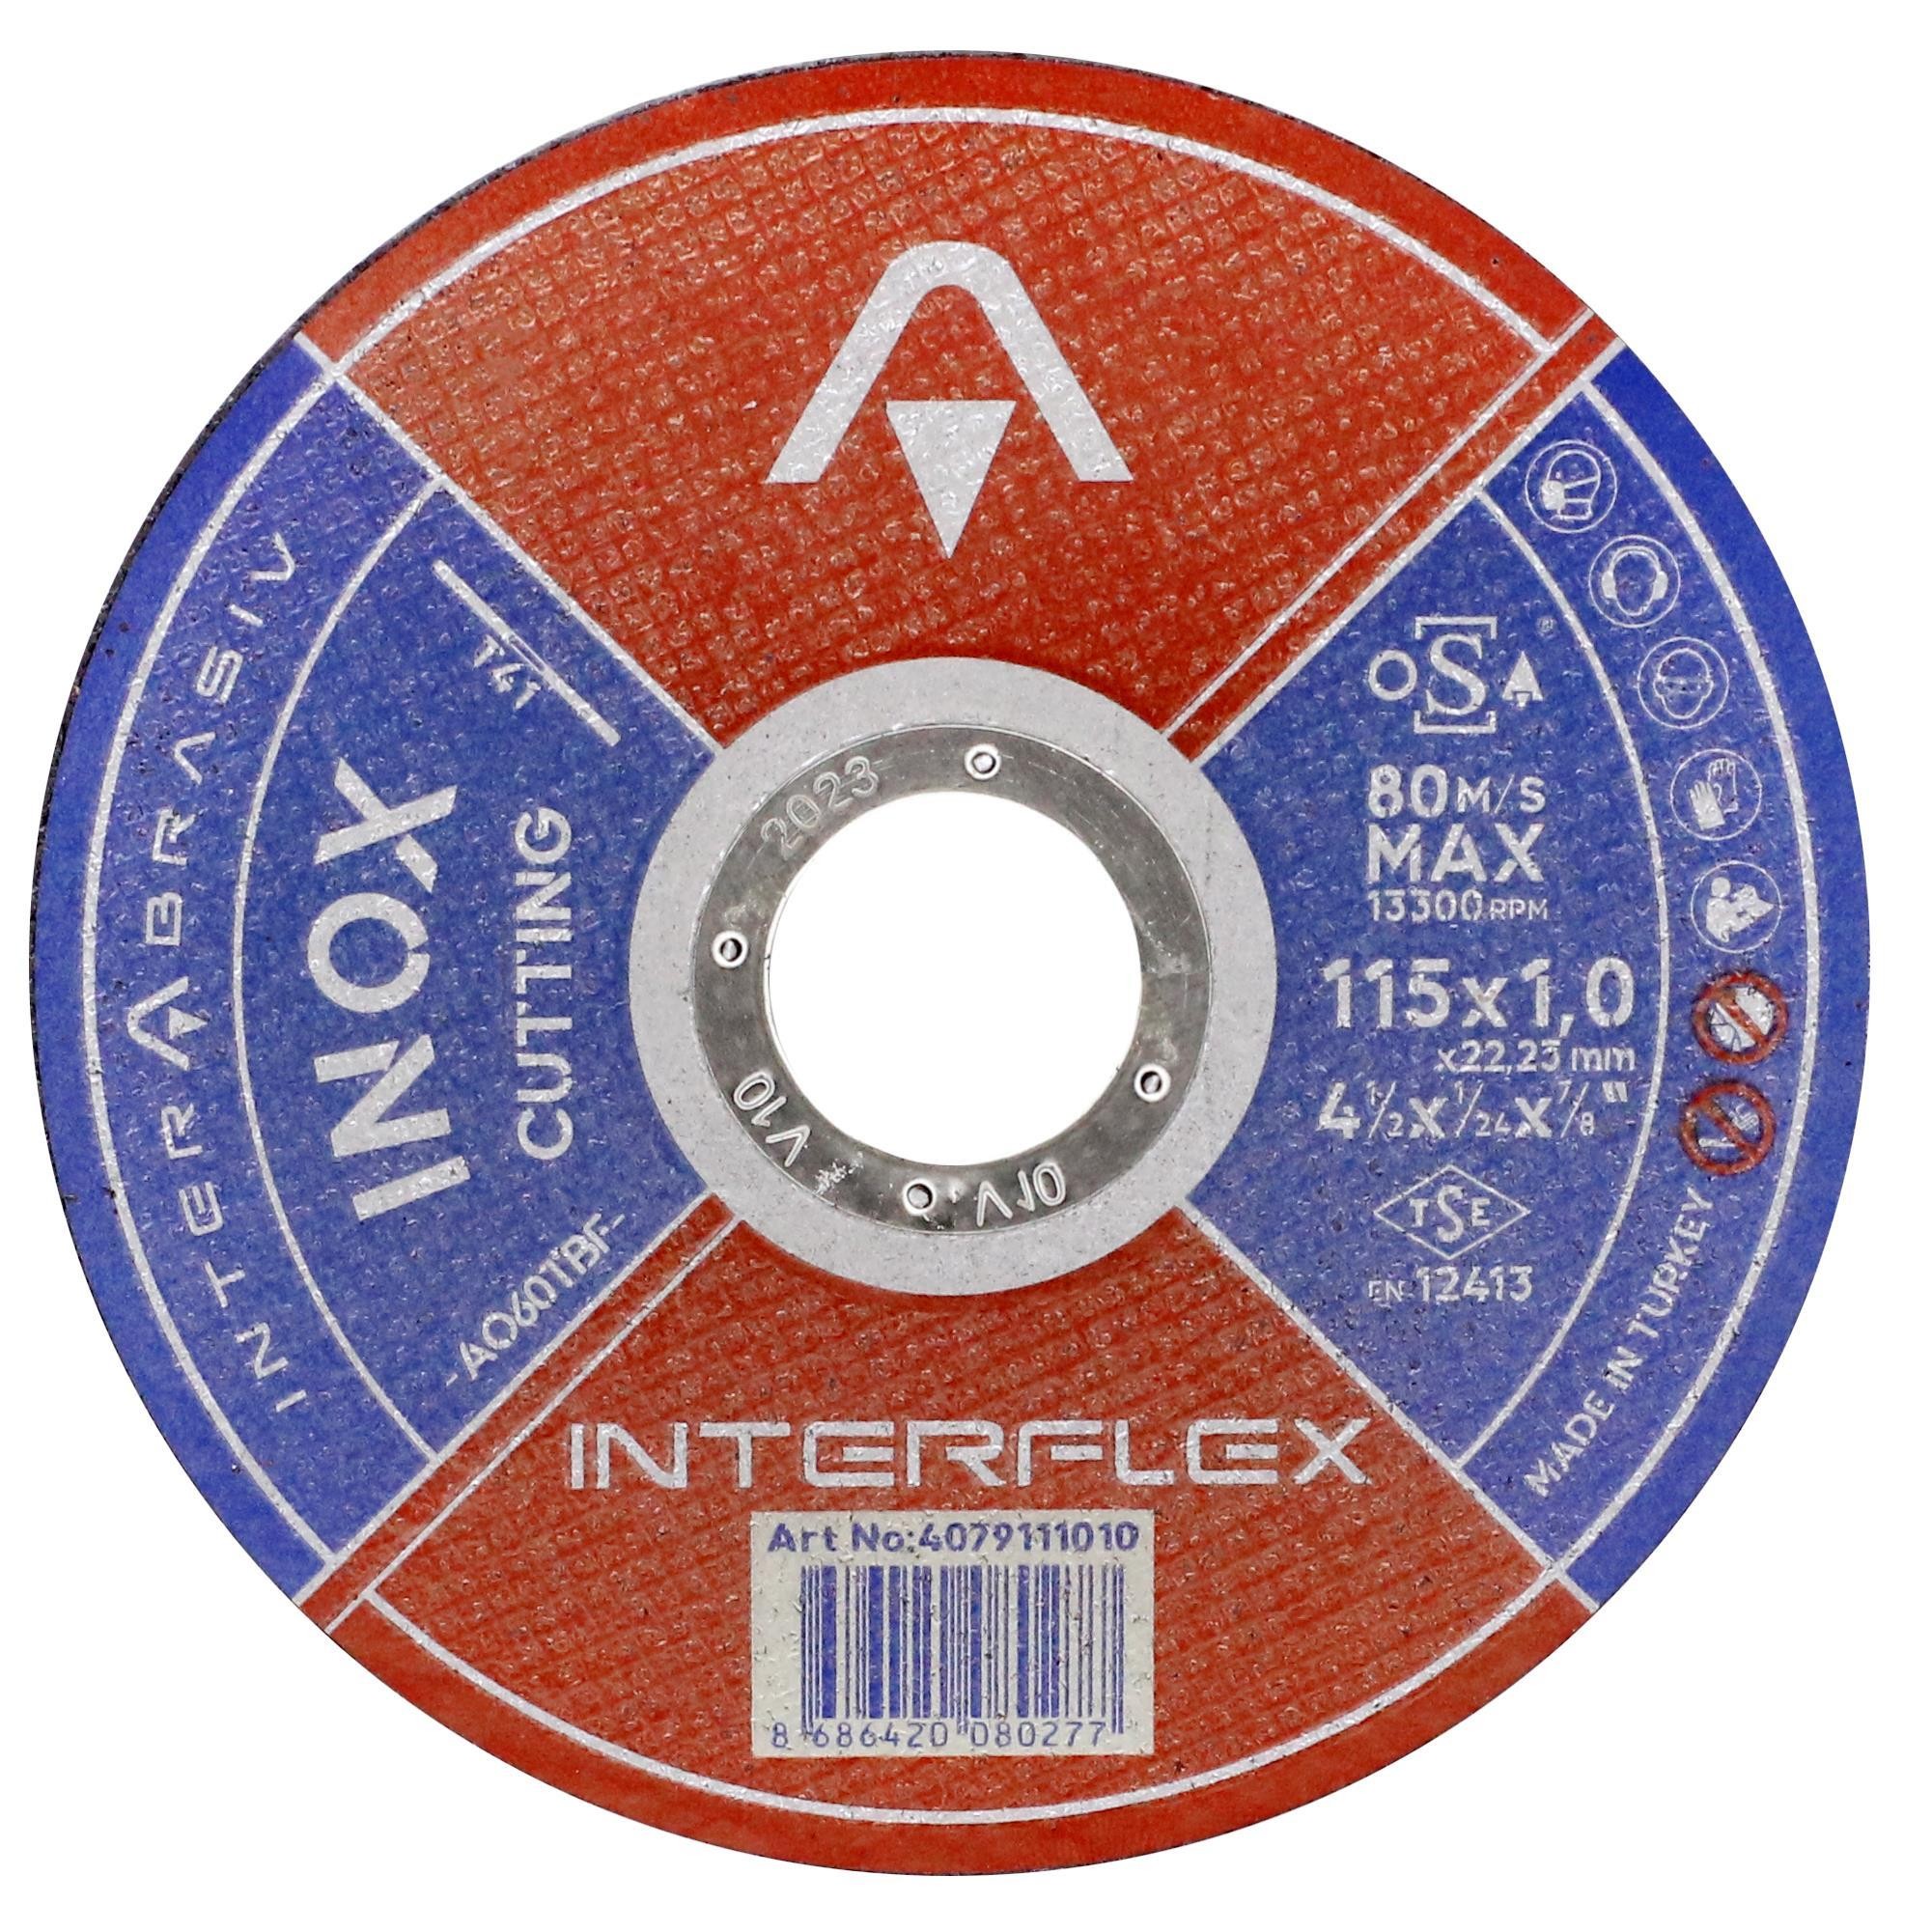 İnterflex İnox Metal Kesici Taş Disk 115x1.0x22.23 mm (50 ADET)